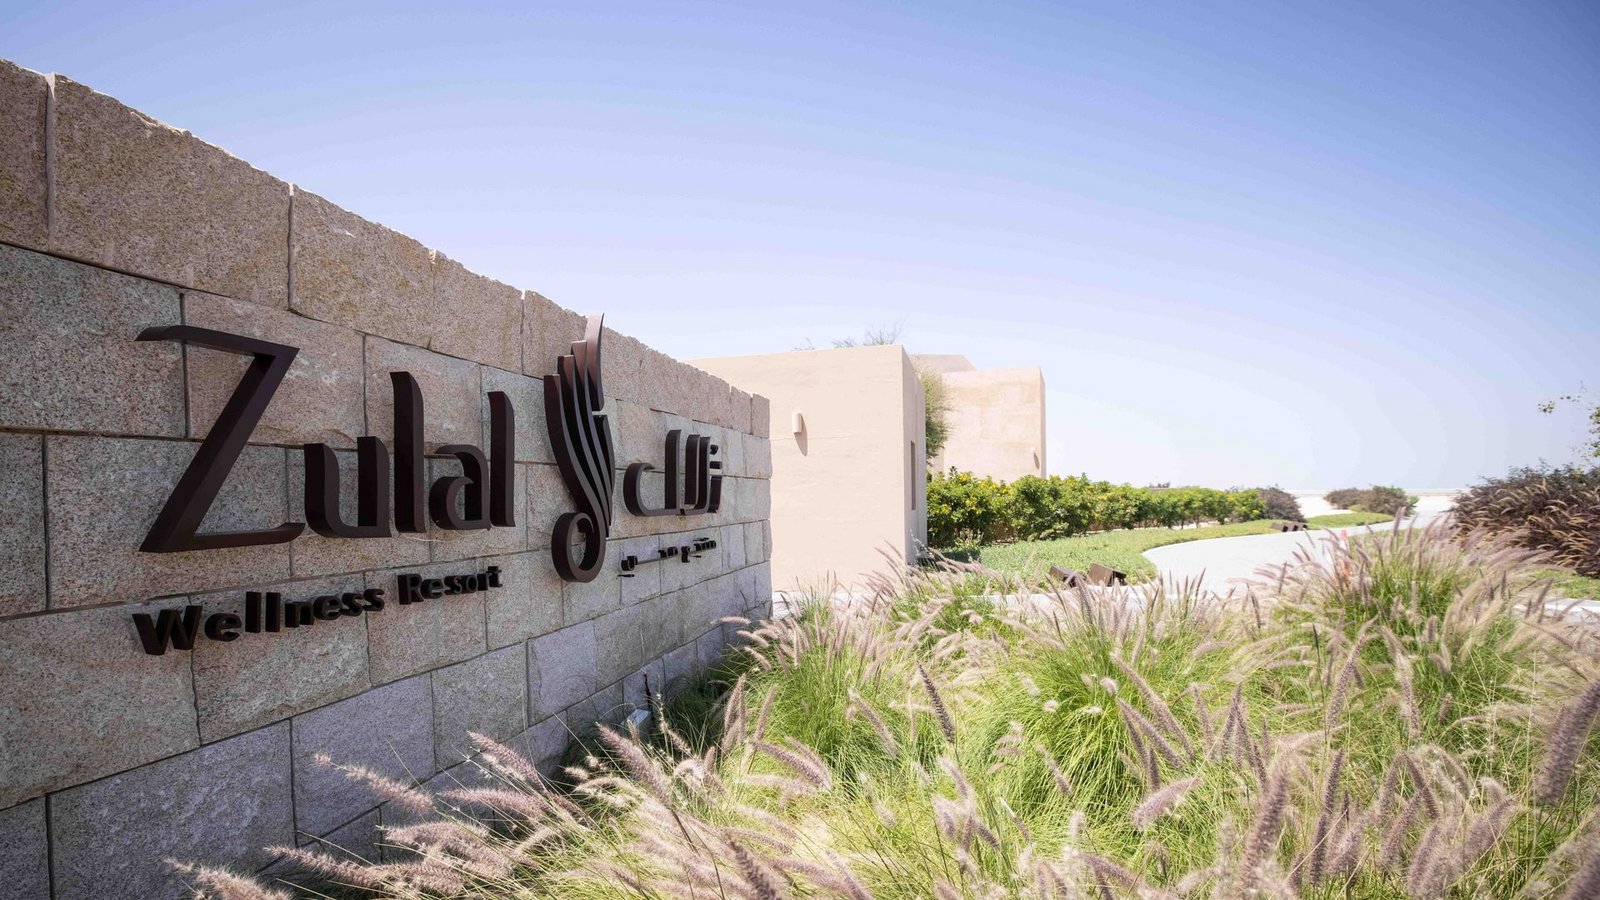 Das "Zulal Wellness Resort" liegt etwa eine Stunde von der Hauptstadt Doha entfernt.Foto: Christian Charisius/dpa